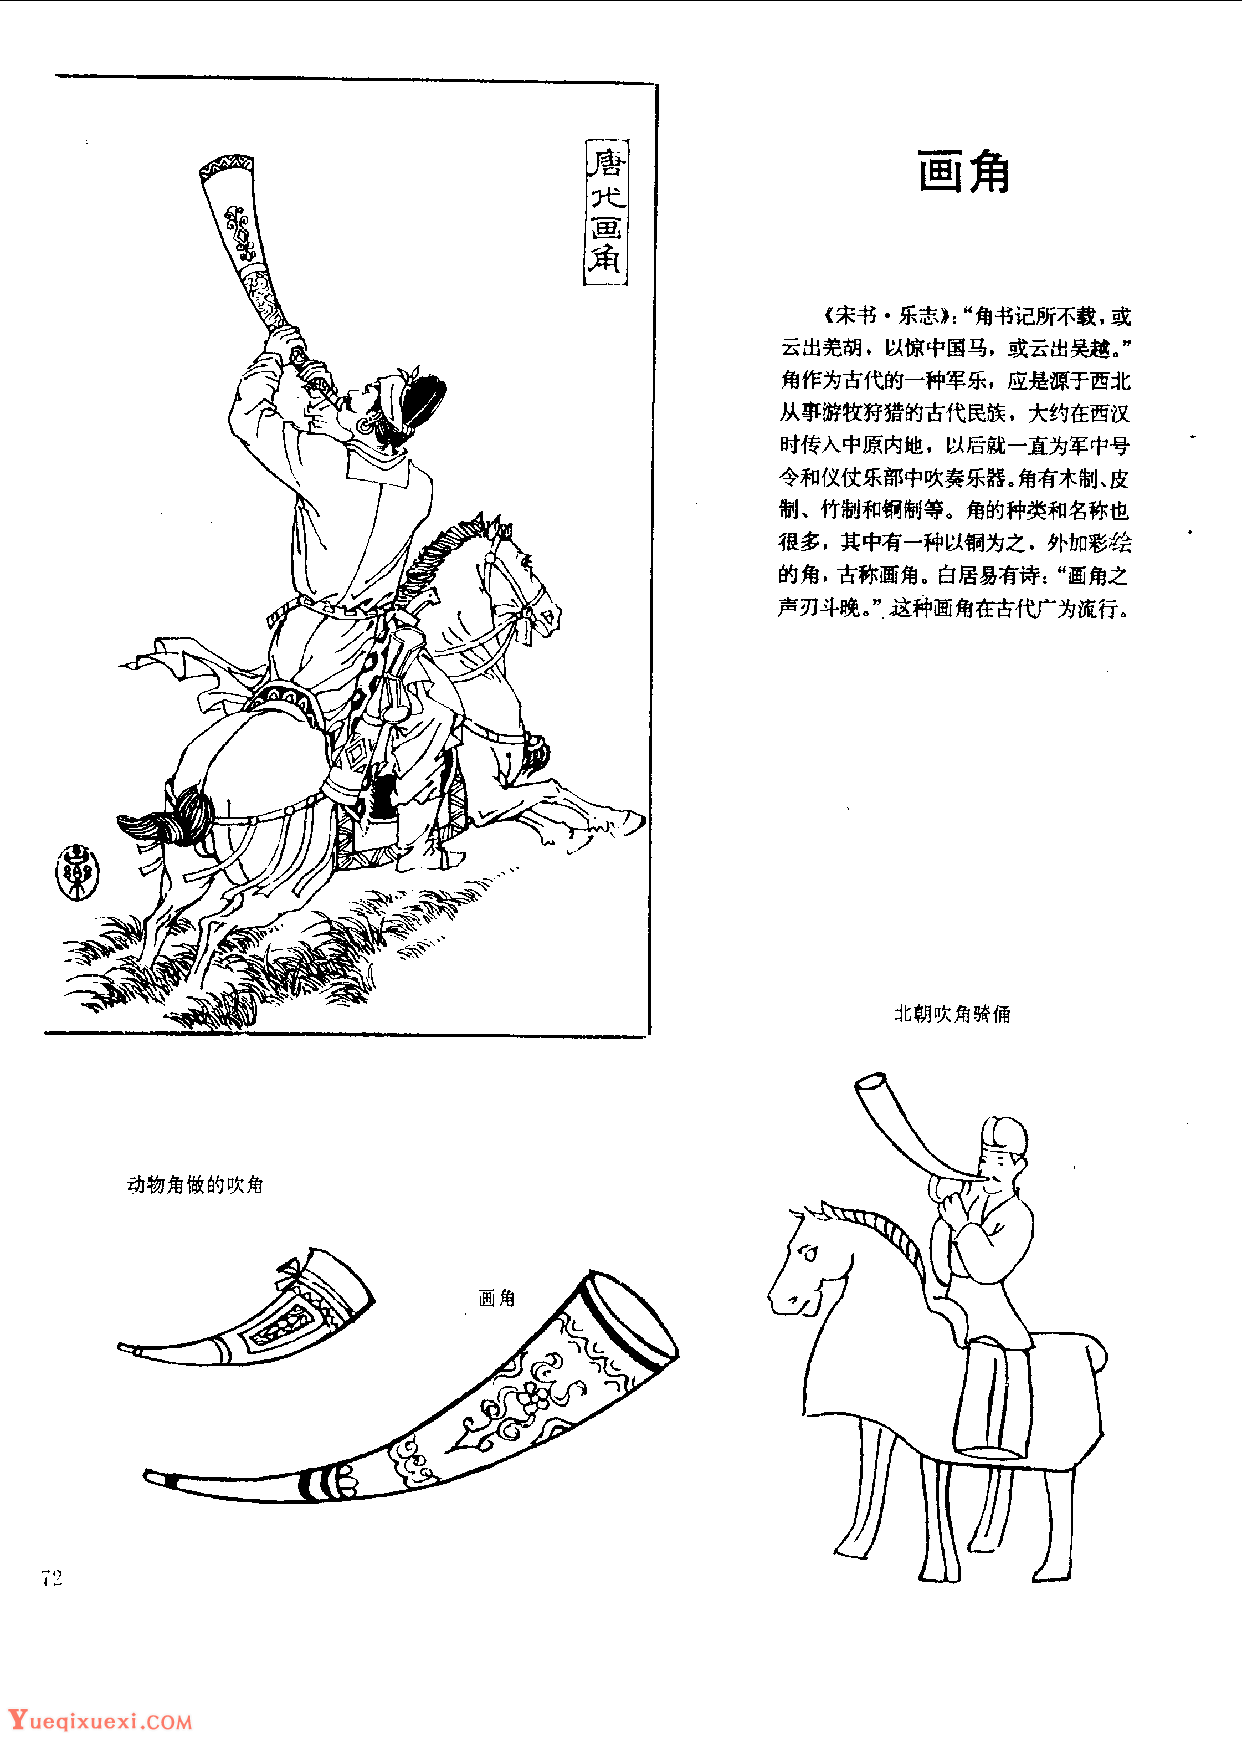 中国古代乐器《画角》